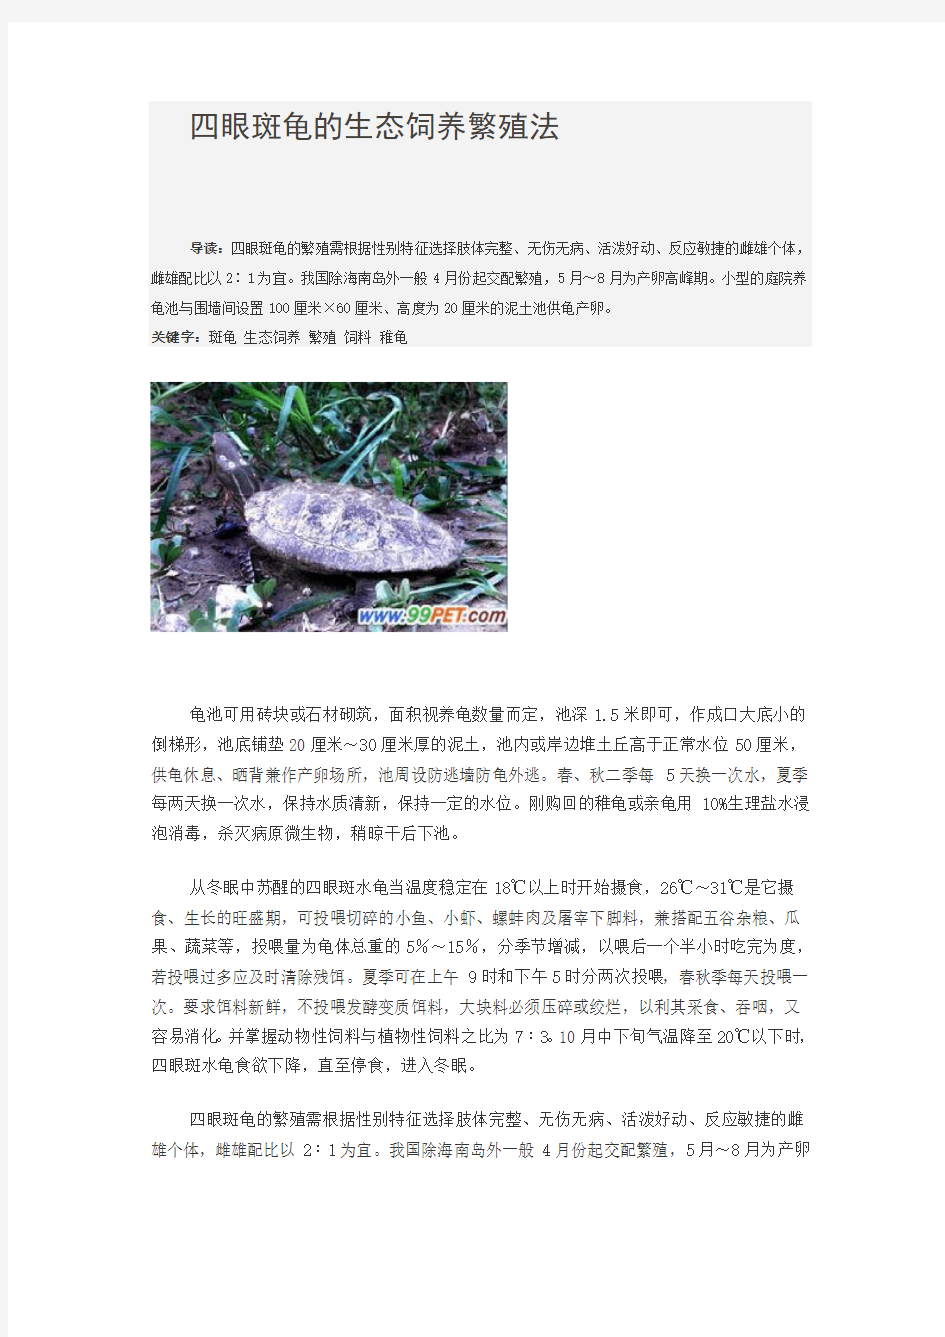 四眼斑龟的生态饲养繁殖法